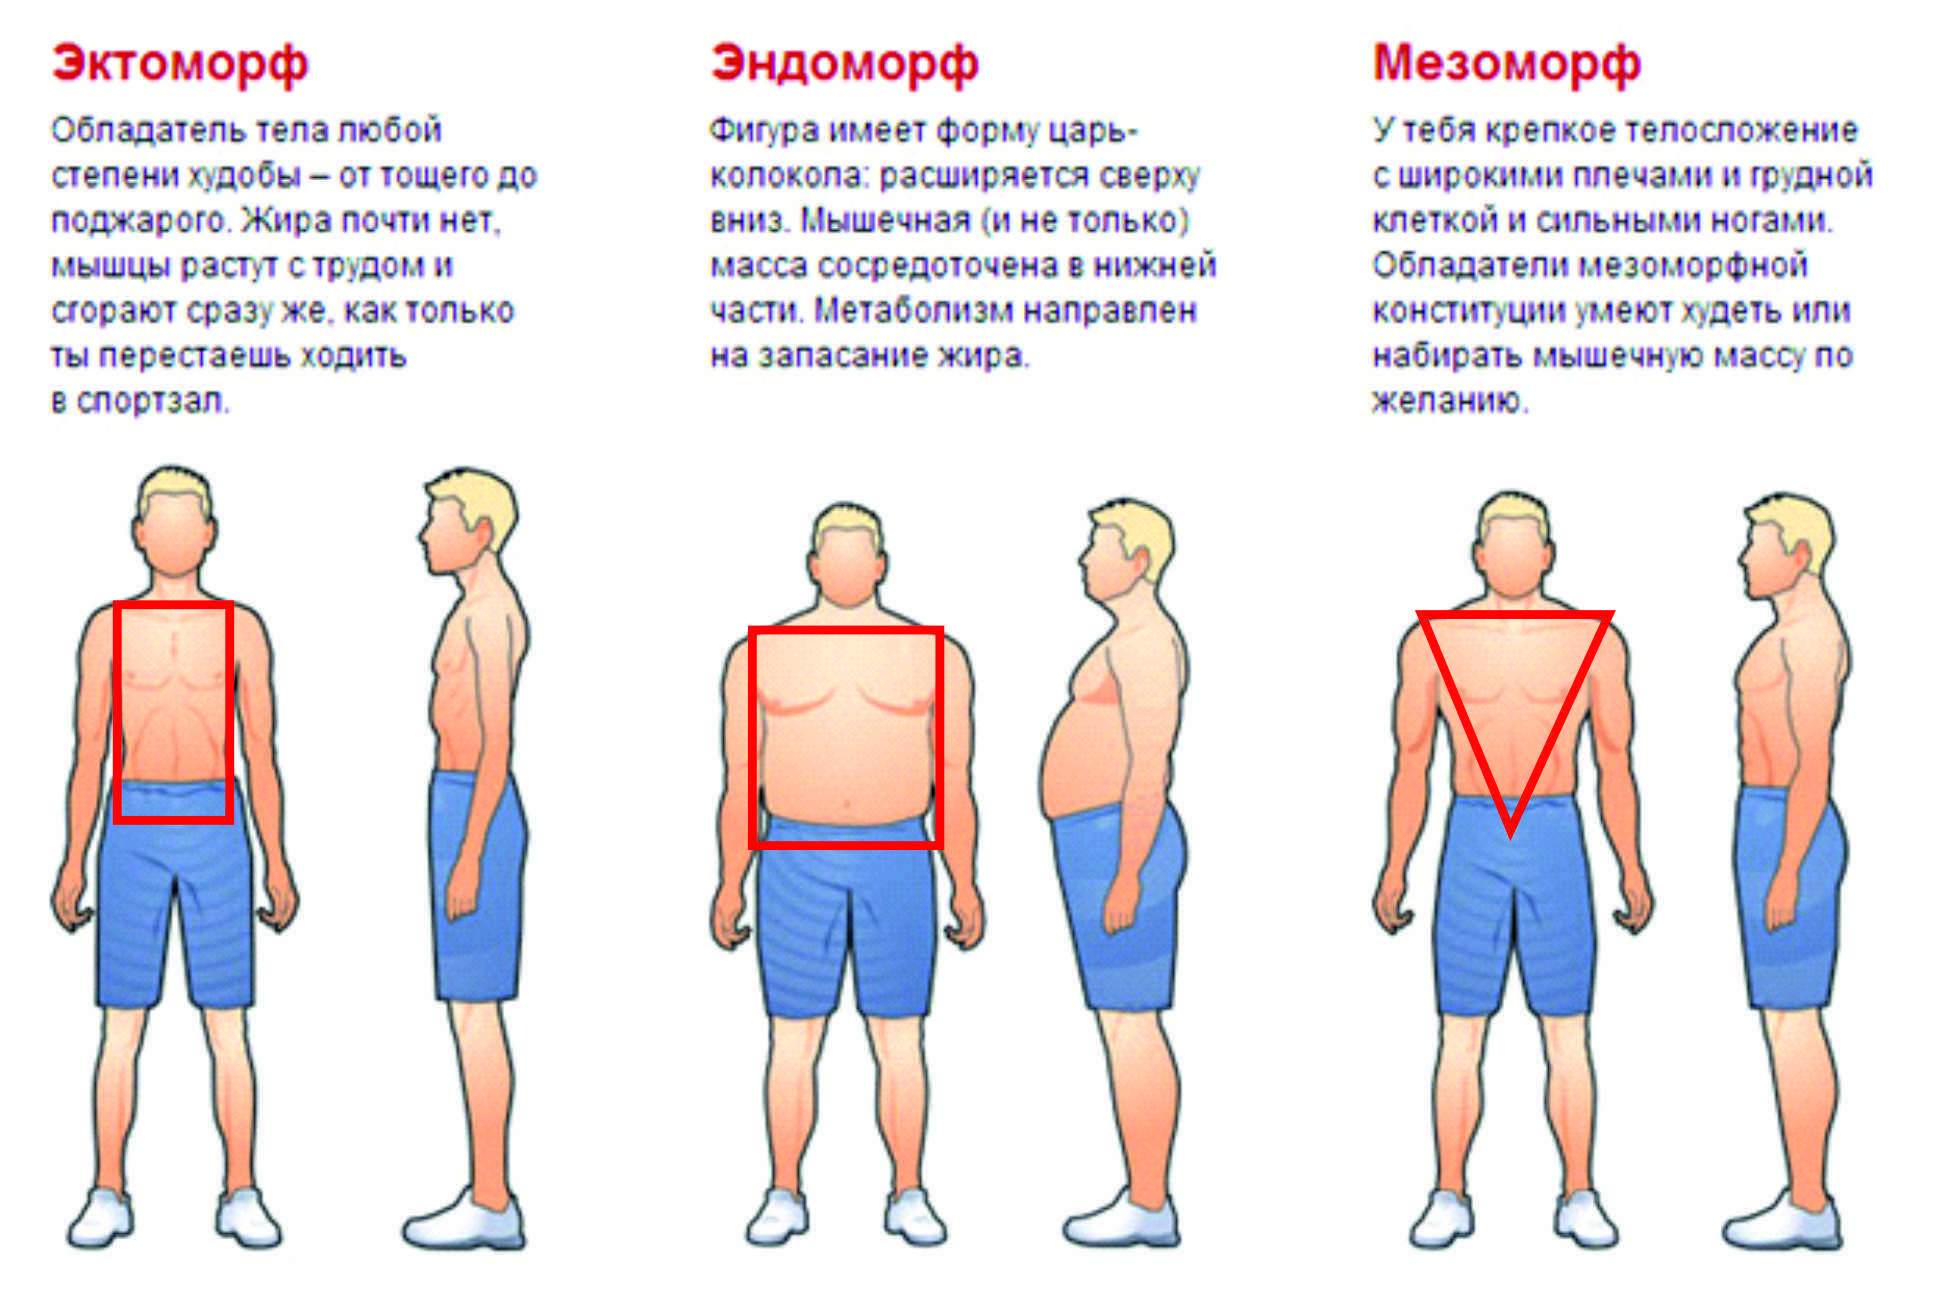 Тип телосложения: эктоморф, мезоморф, эндоморф    
тип телосложения: эктоморф, мезоморф, эндоморф